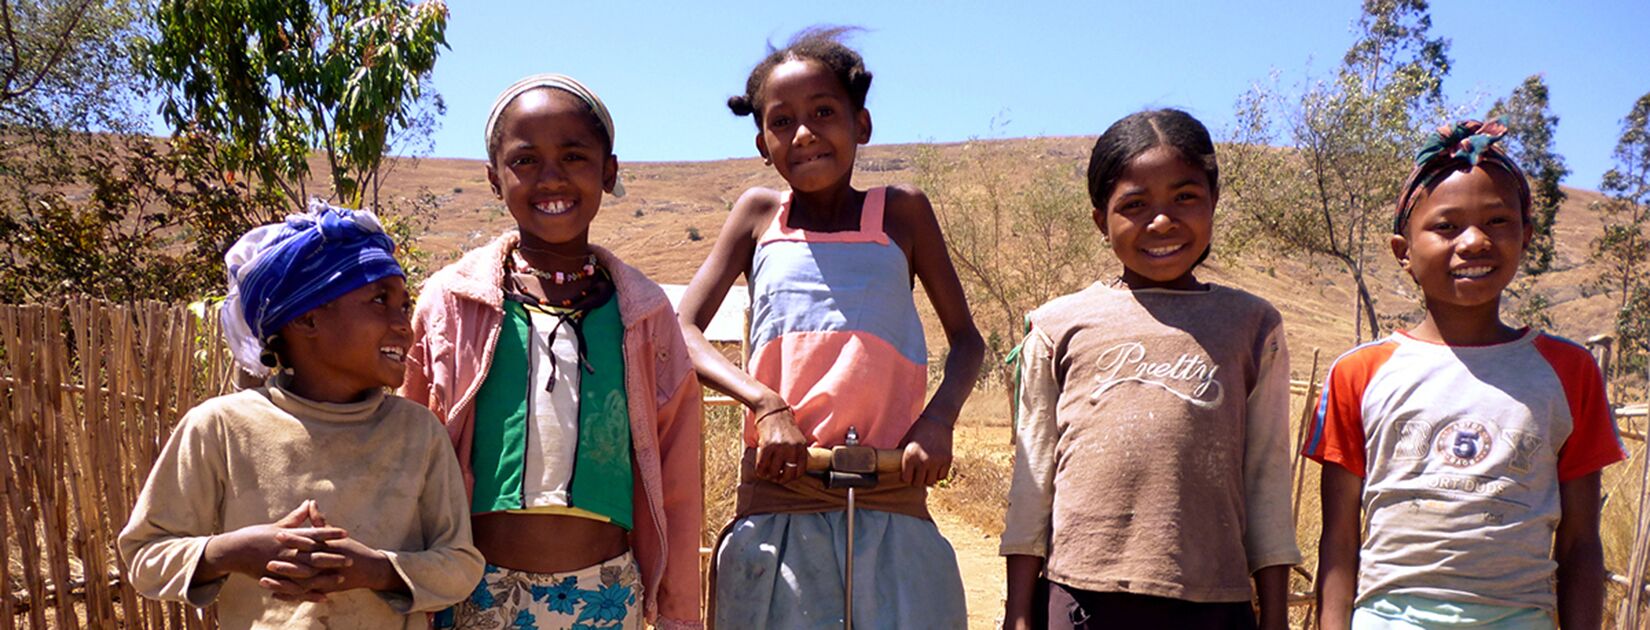 rendre les femmes plus autonomes à Madagascar